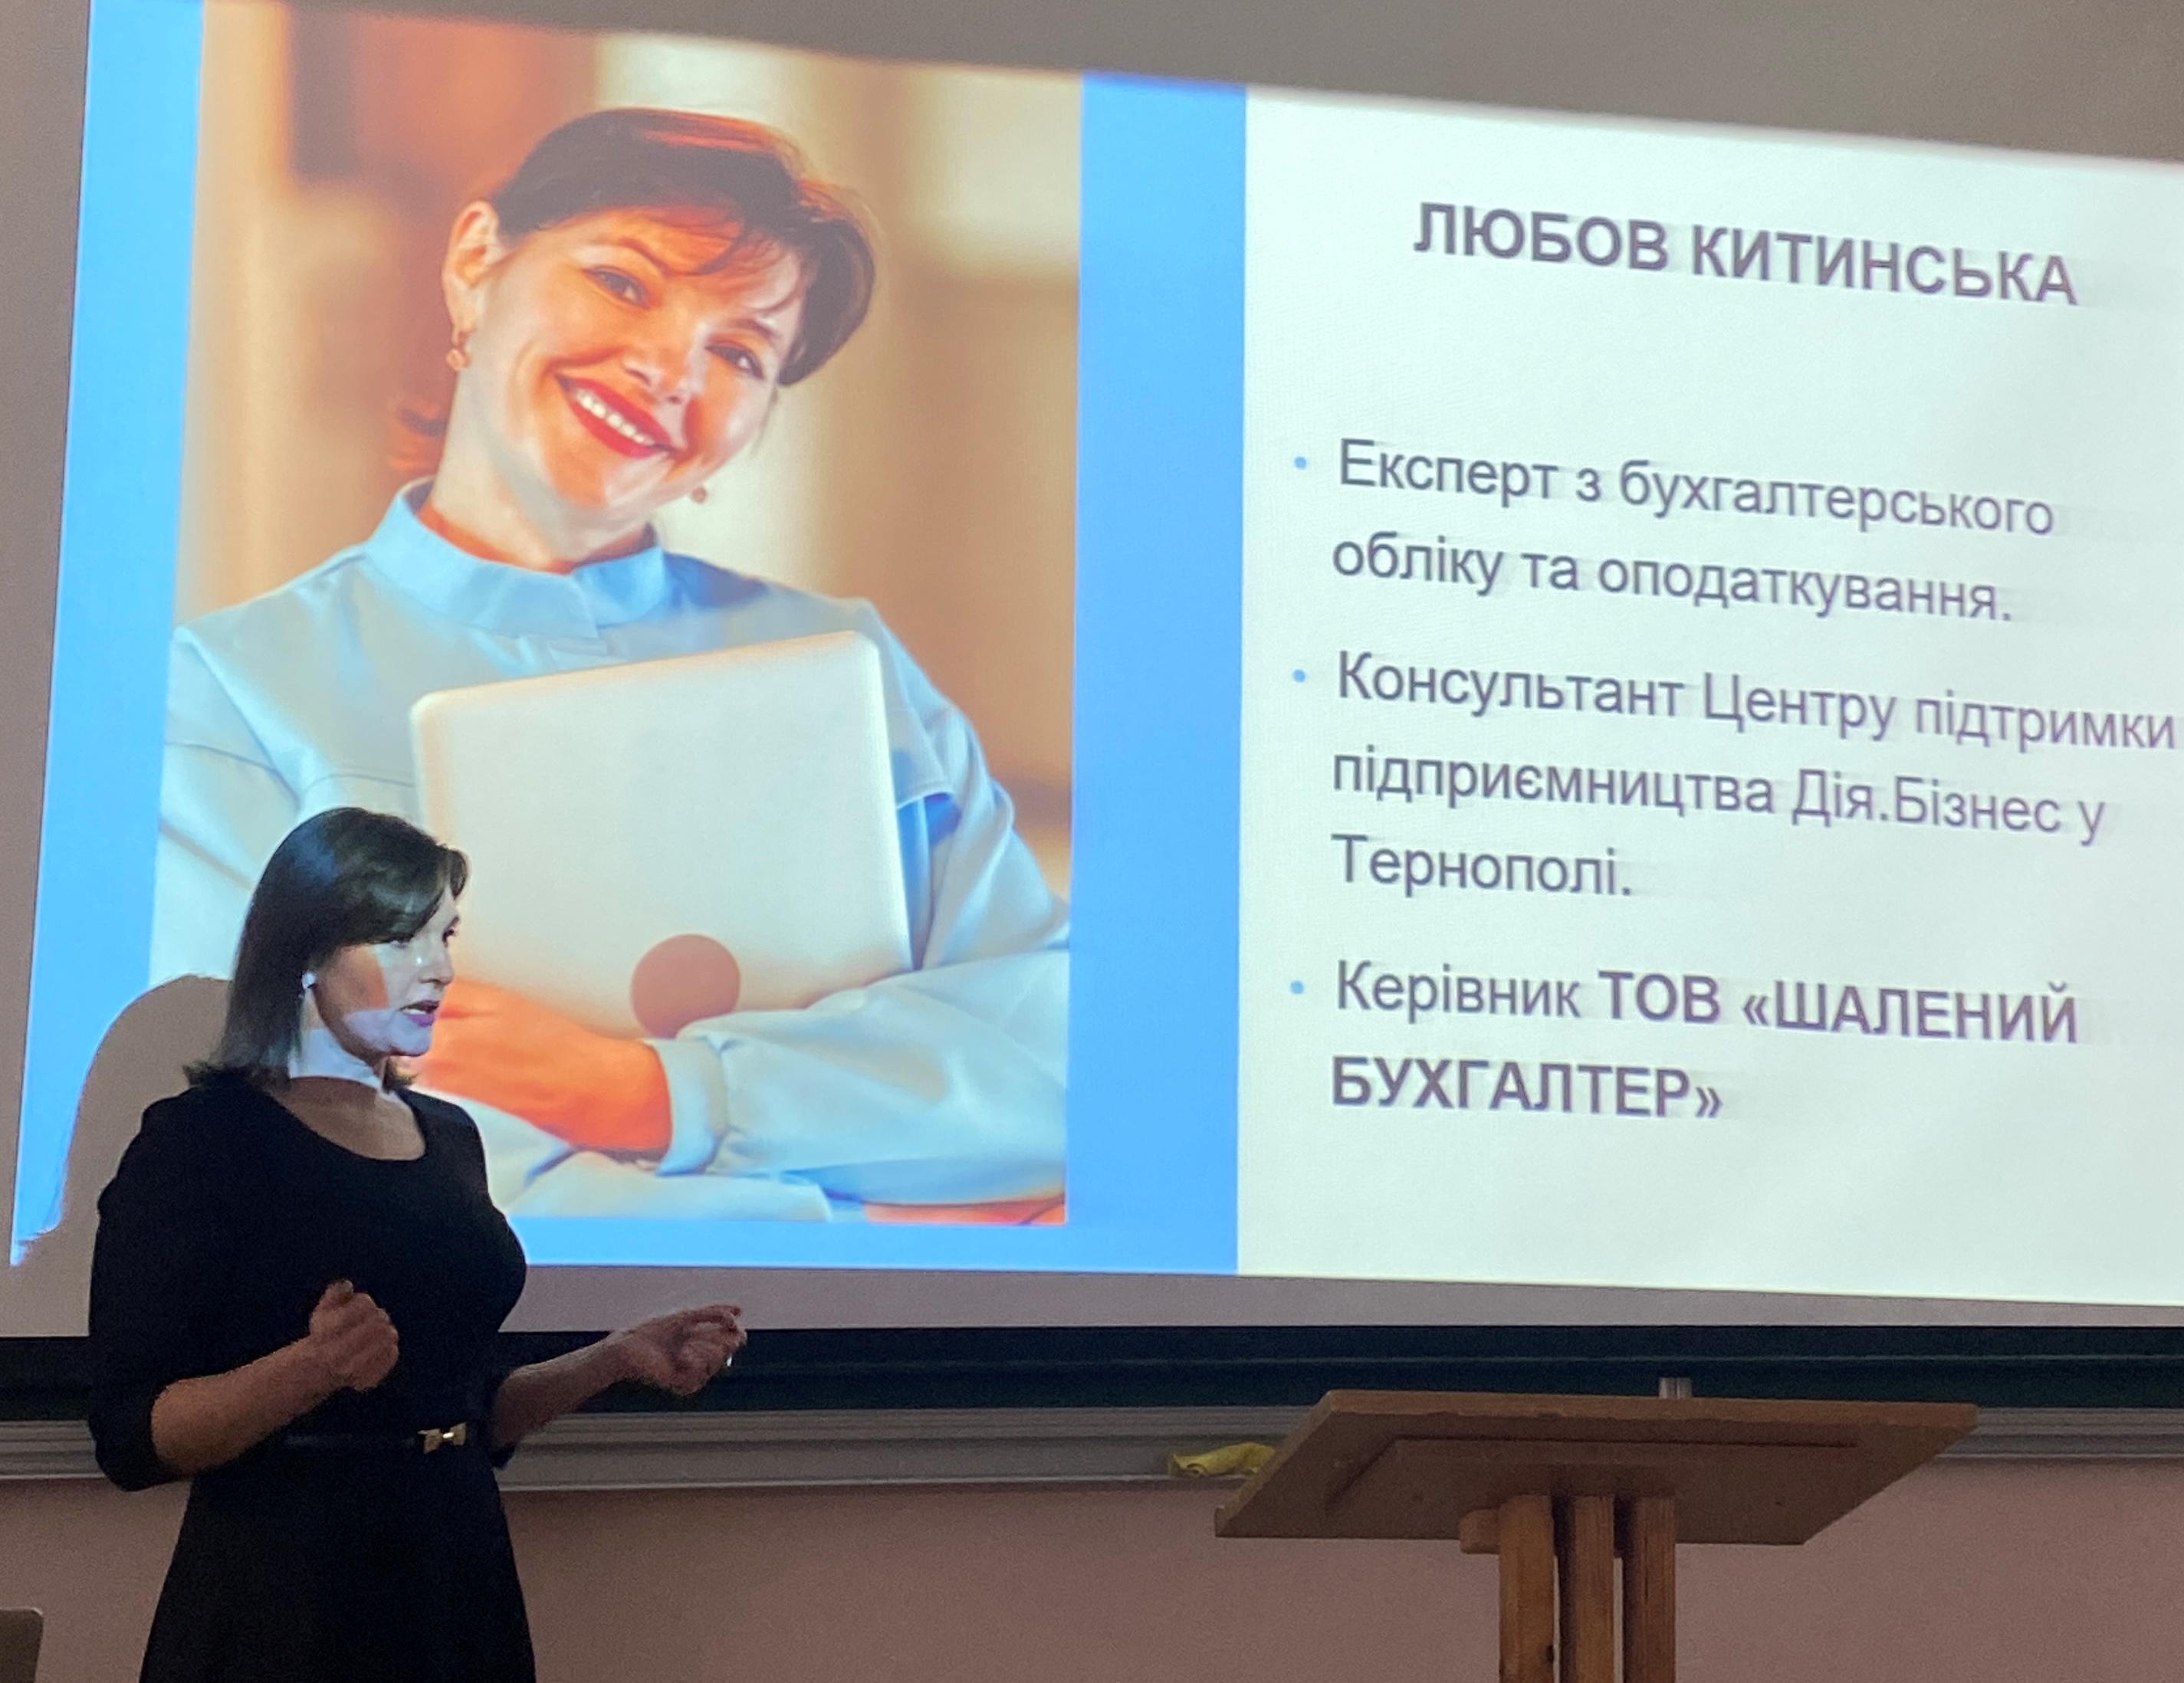 Експертка з бухгалтерського обліку Любов Китинська під час лекції